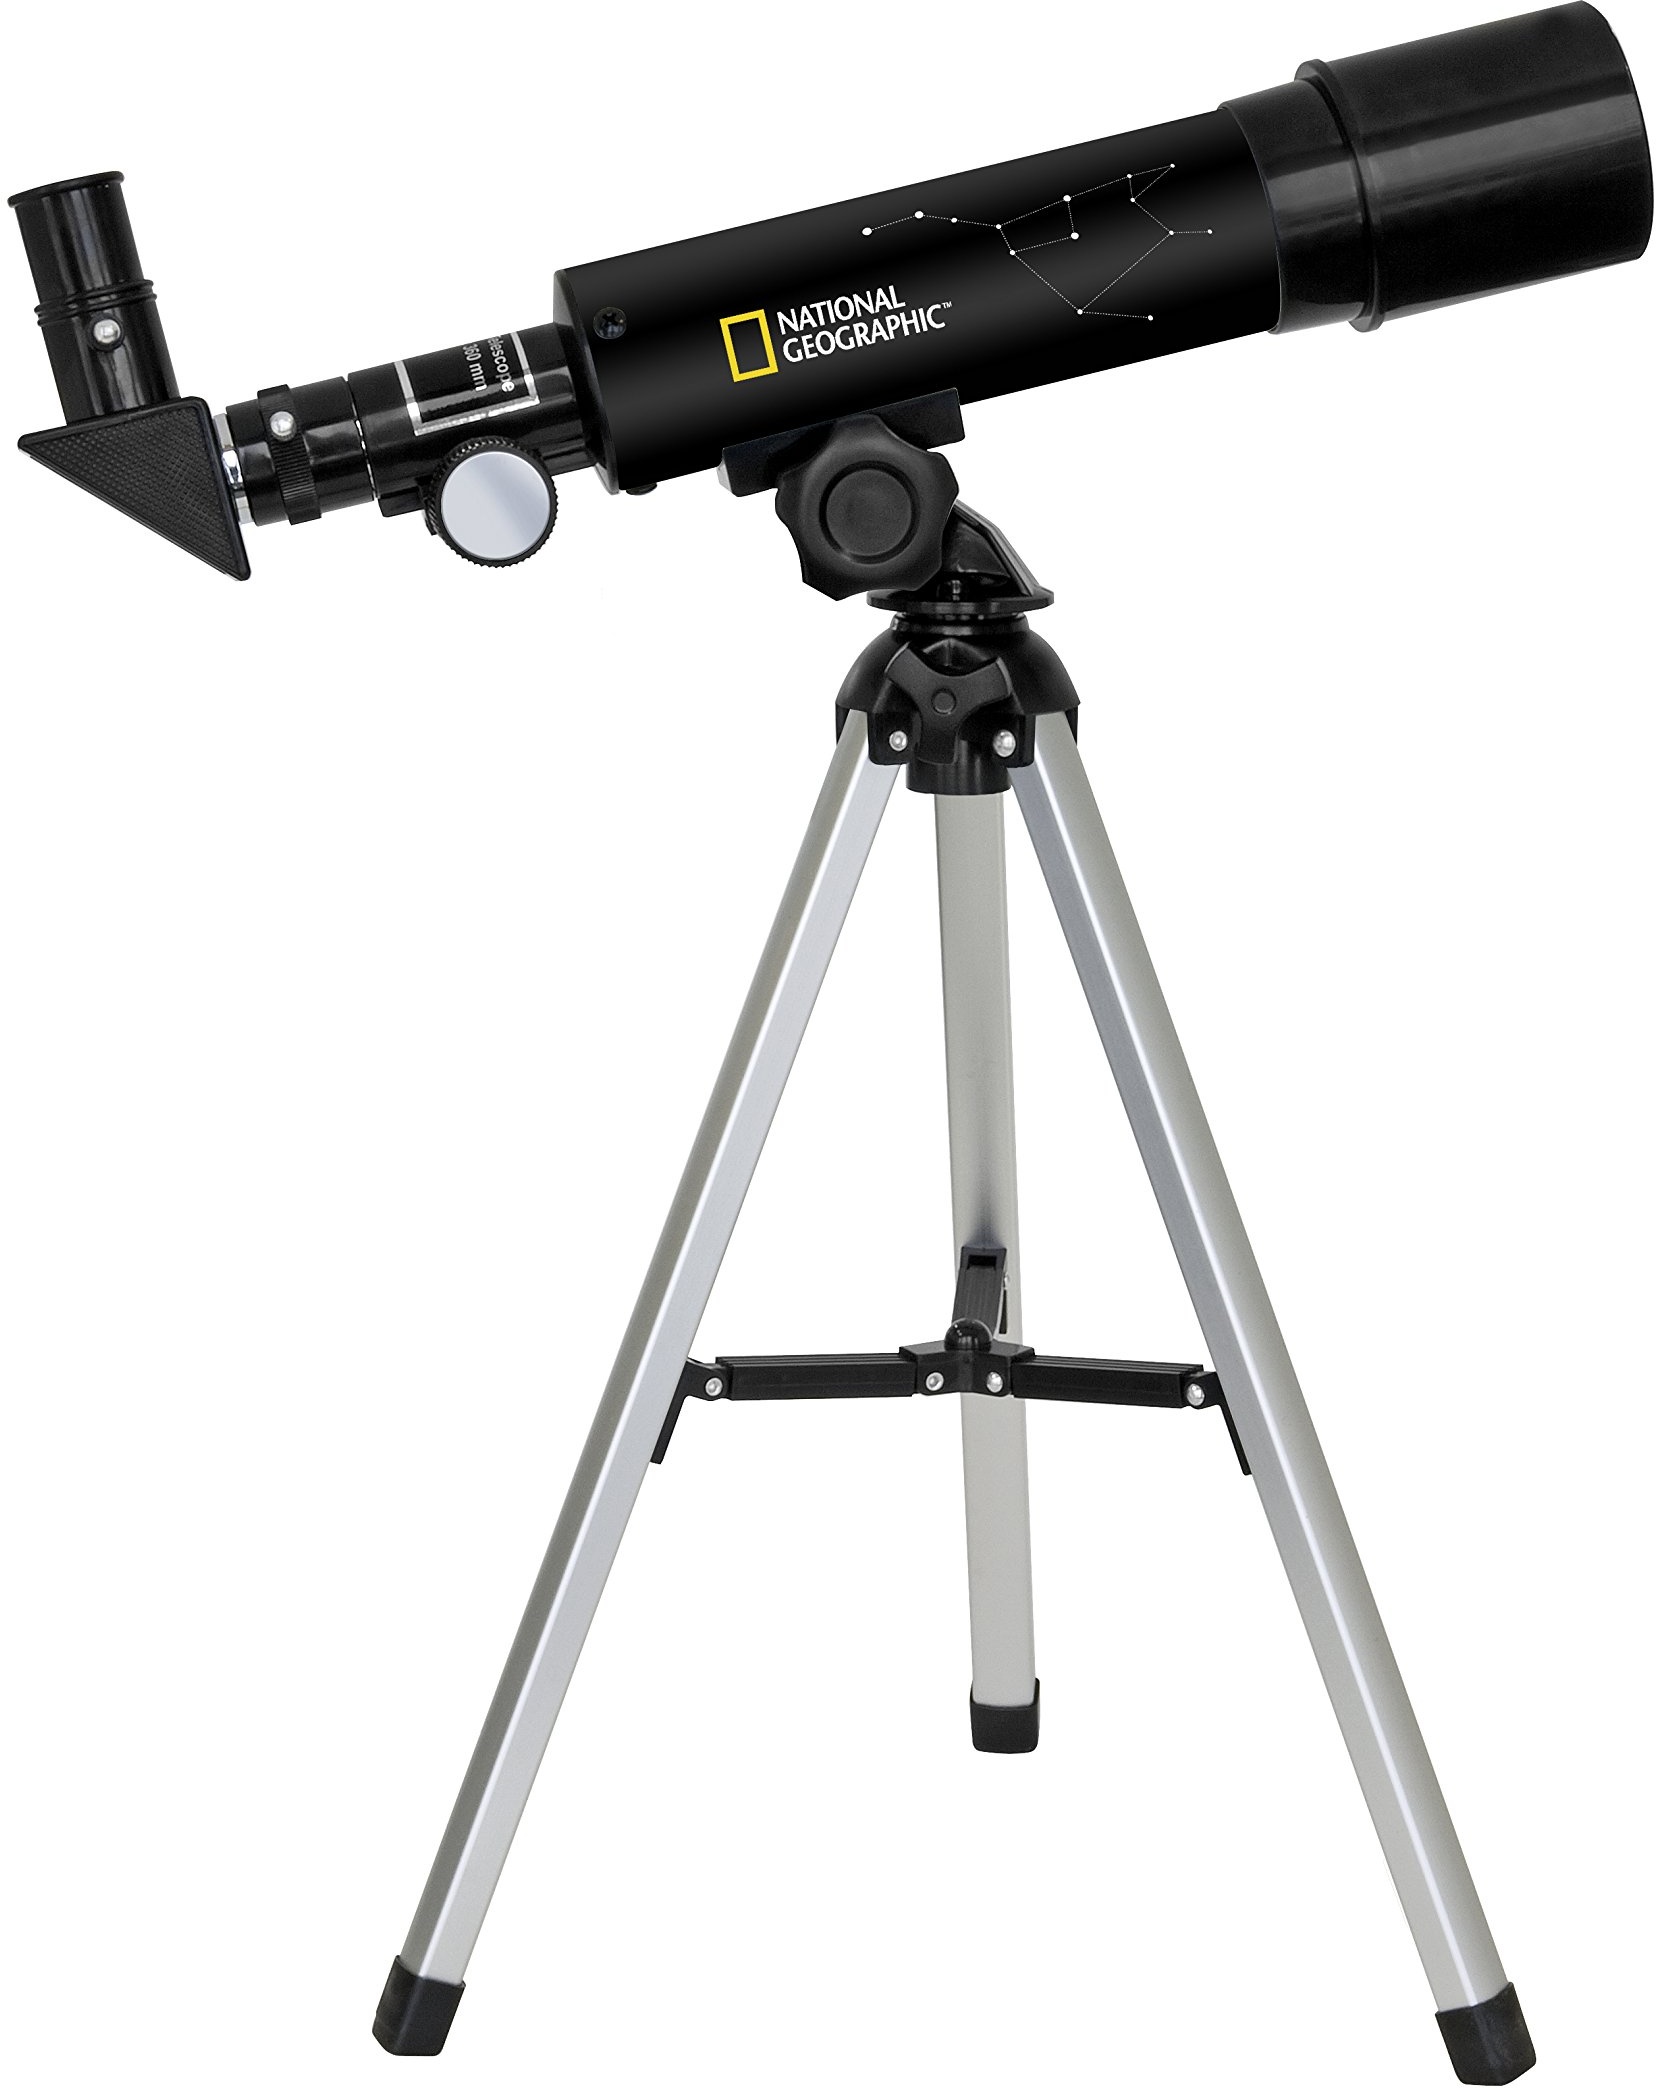 National Geographic 50/360 Teleskop mit Tischstativ aus Aluminium, 60-facher Vergrößerung und Zenitspiegel für Land- und Planetenbeobachtungen, schwarz